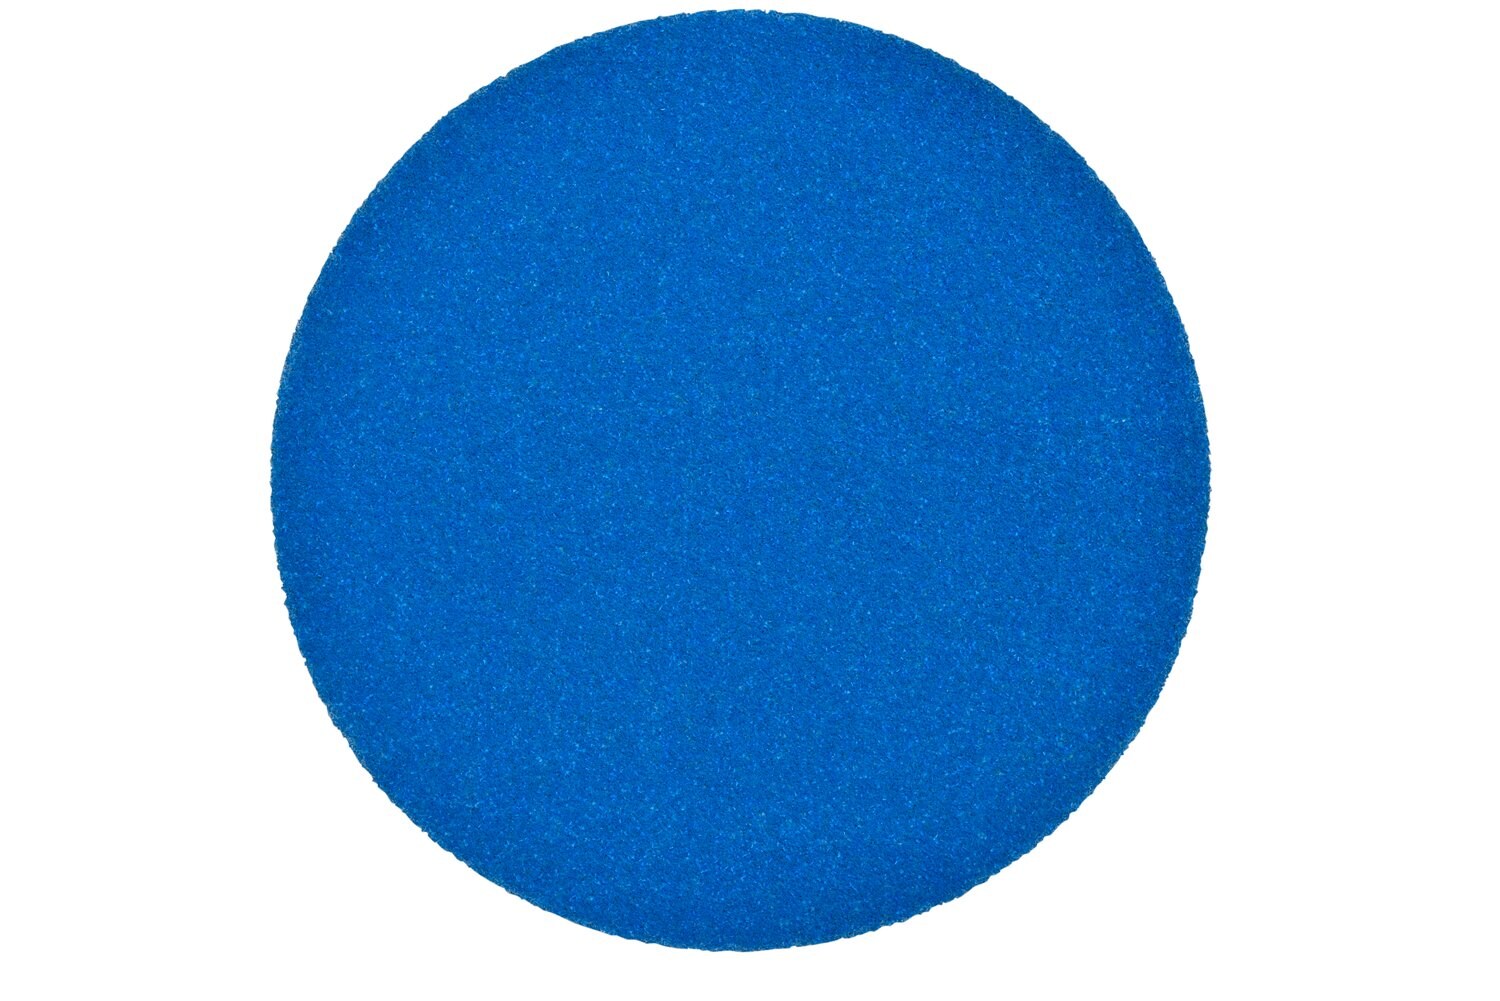 7100199697 - 3M Stikit Blue Abrasive Disc Roll 321U, 36264, 5 in, 40 grade, No
Hole, 25 discs per roll, 5 rolls per case